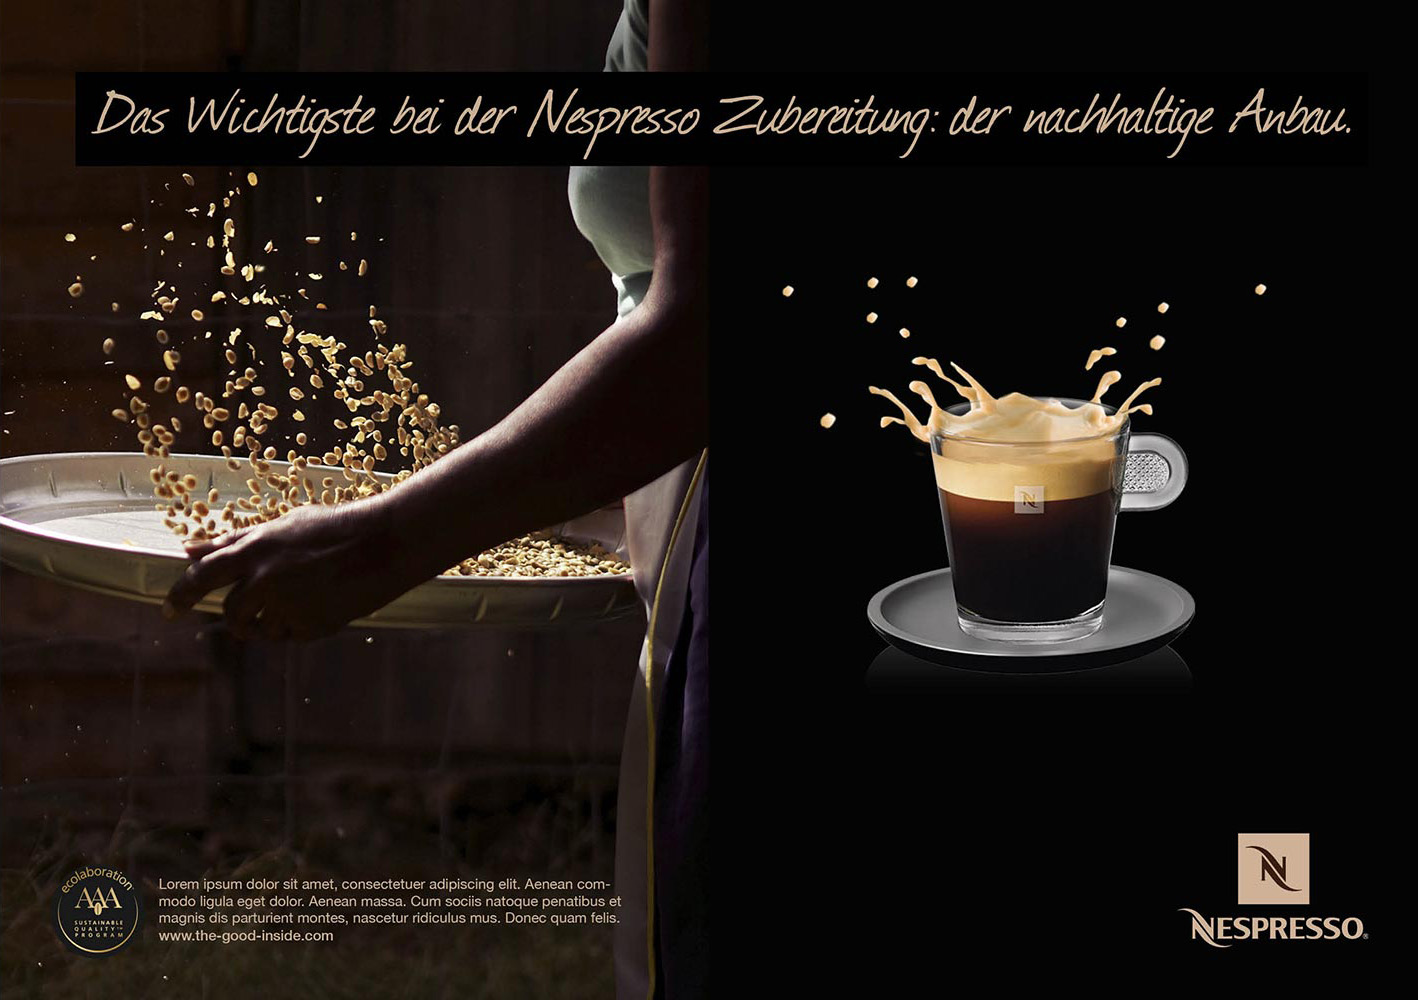 Archiv Nespresso Kampagne Nachhaltigkeit: Motiv 'Nachhaltiger Anbau'